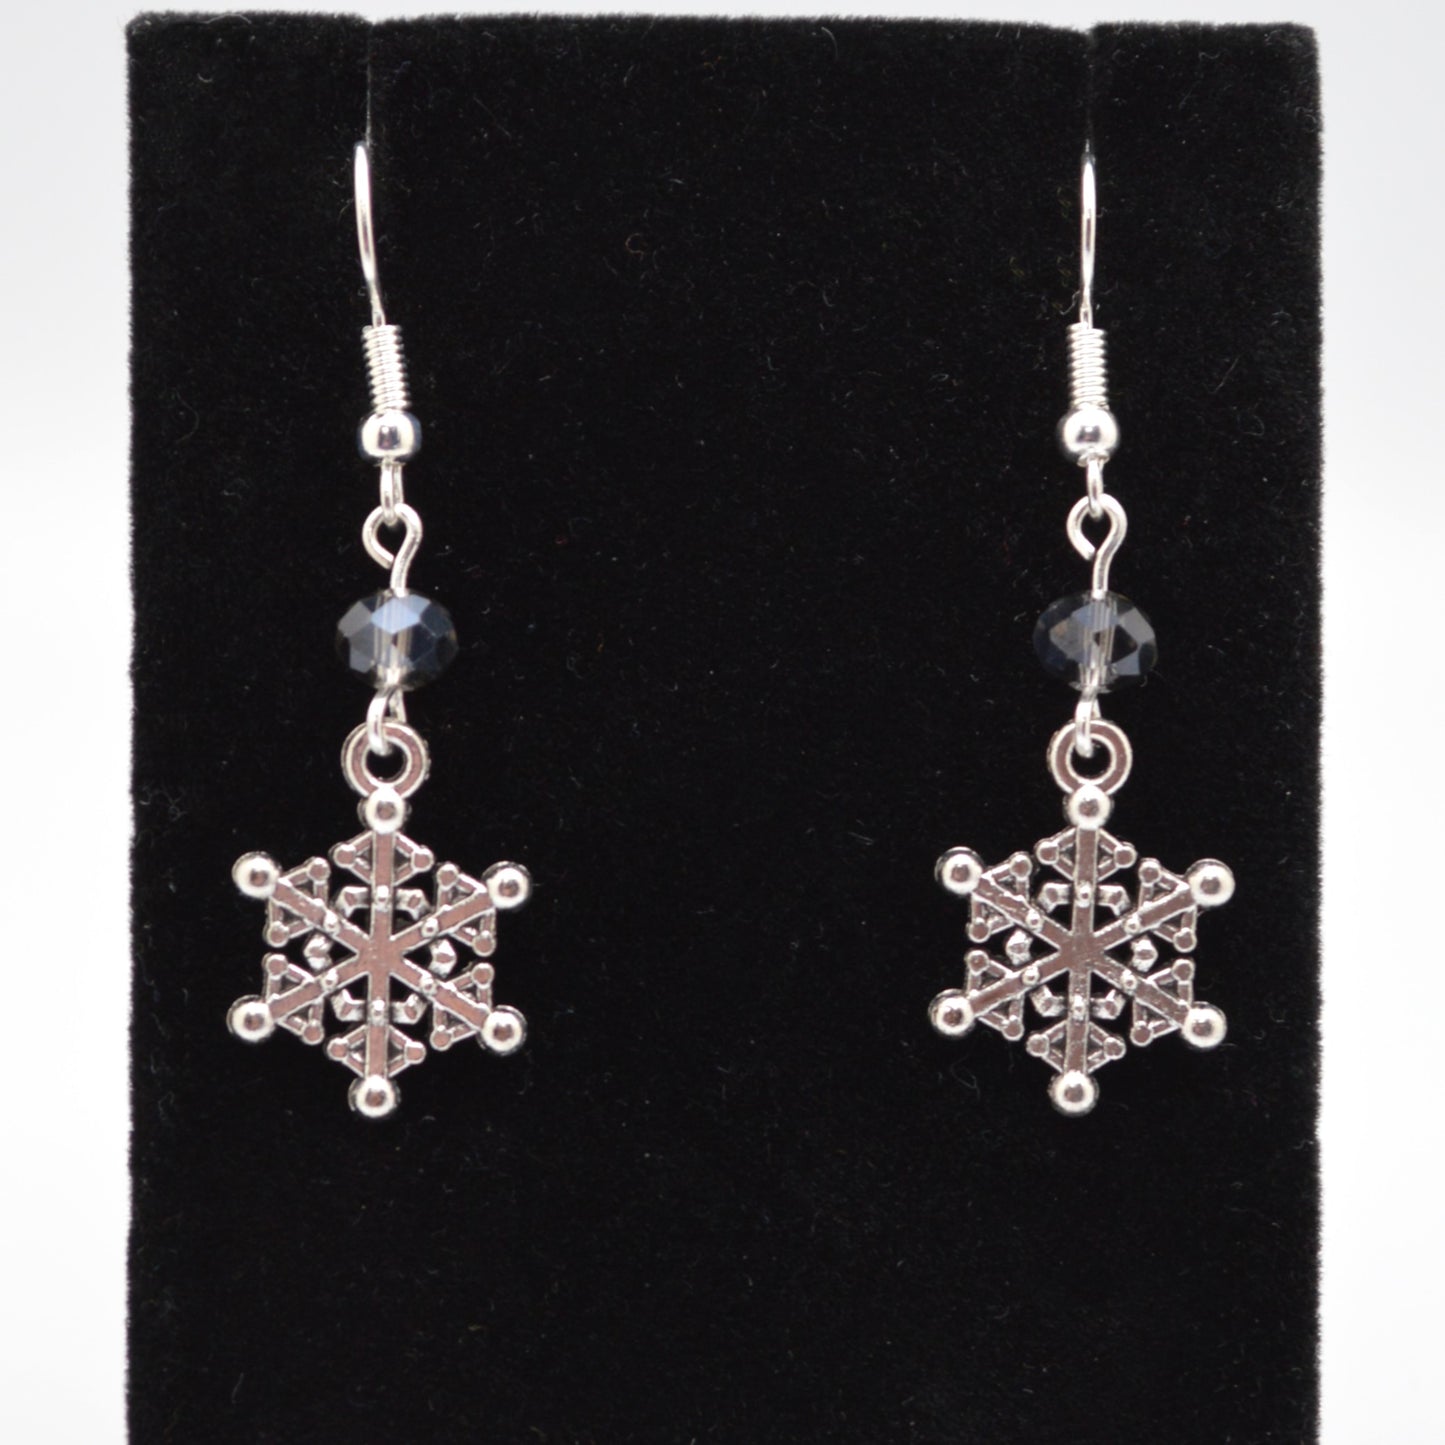 Snowflake Earrings #6 (Light Topaz)